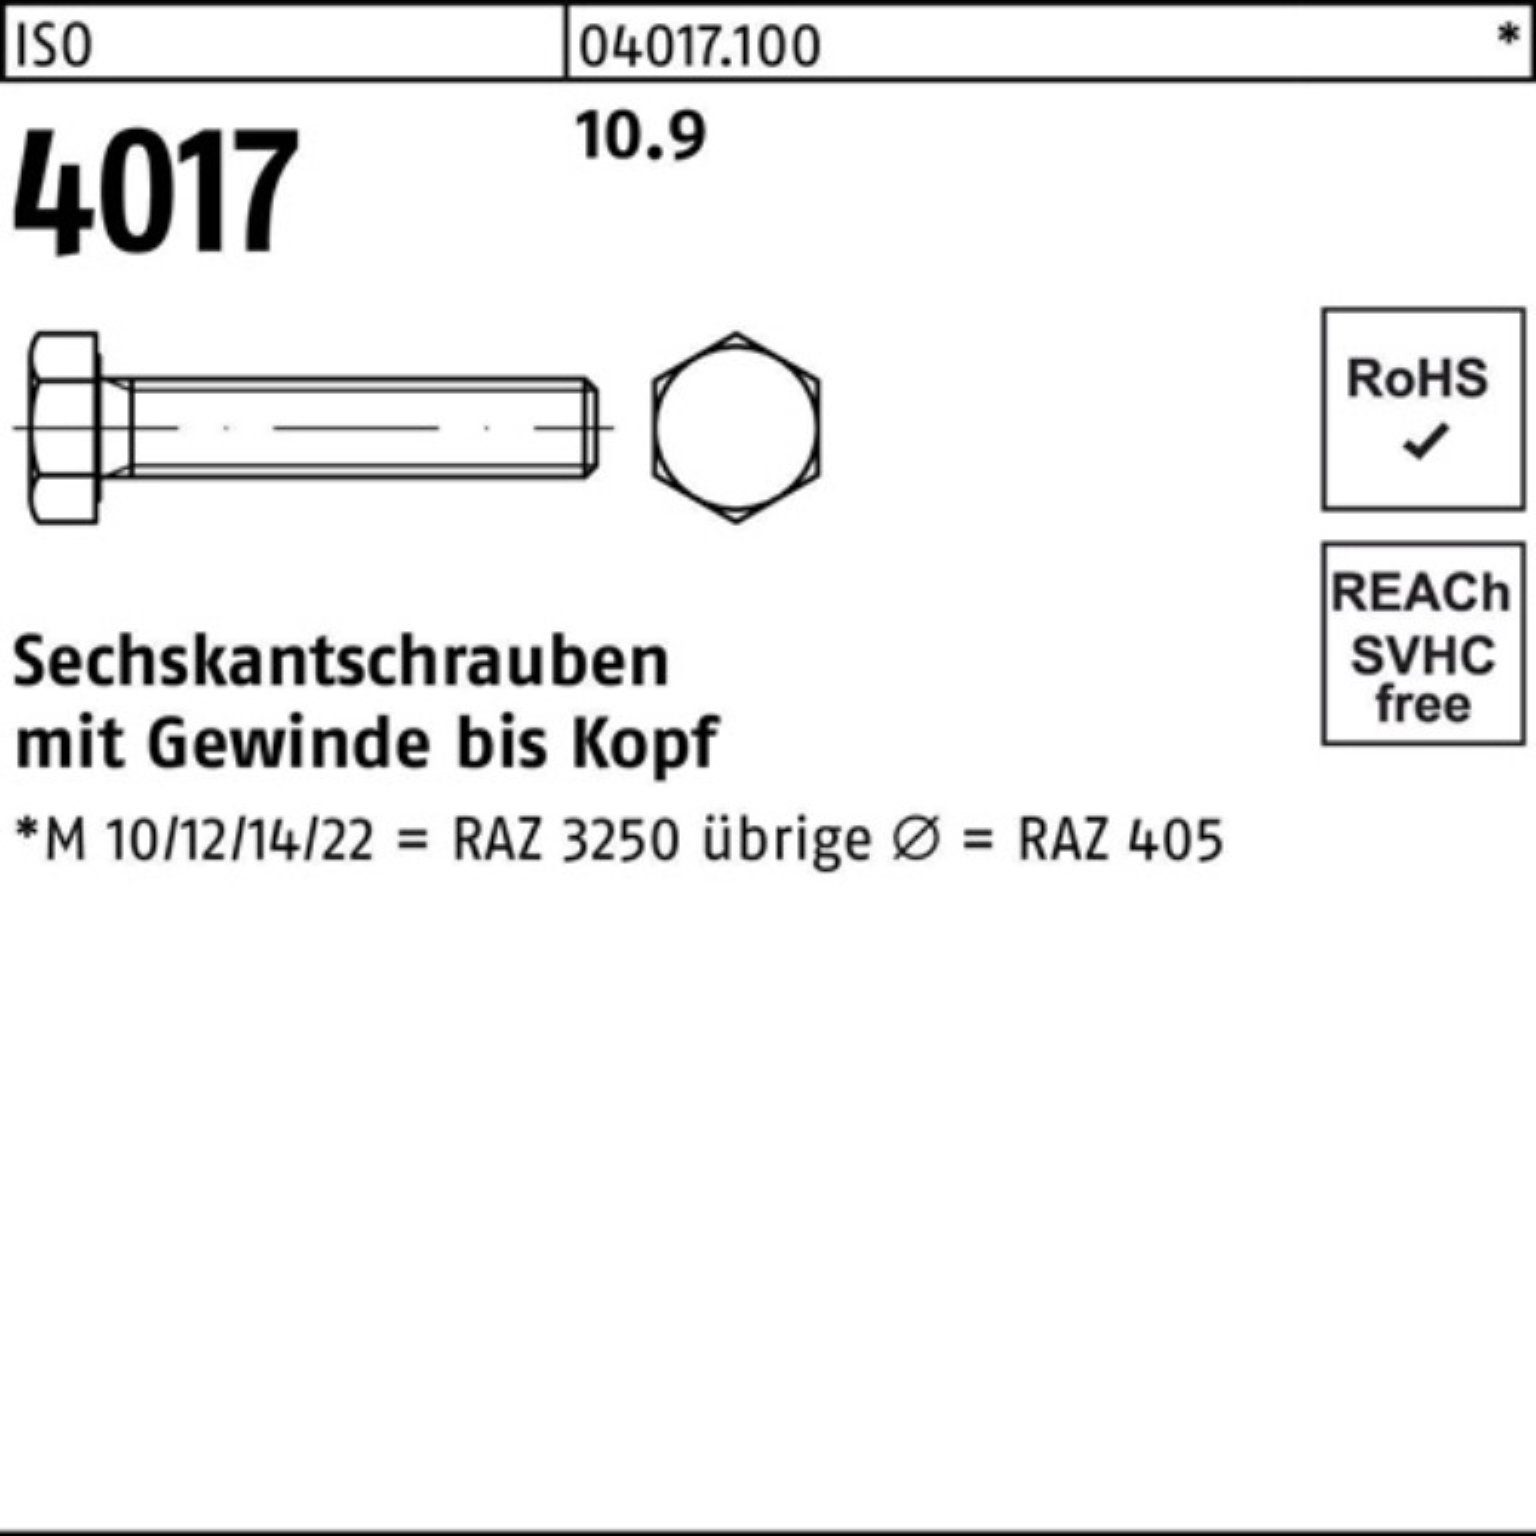 30 Bufab Sechskantschraube 100er M24x Pack VG ISO Sechskantschraube ISO 40 4017 10.9 Stück 25